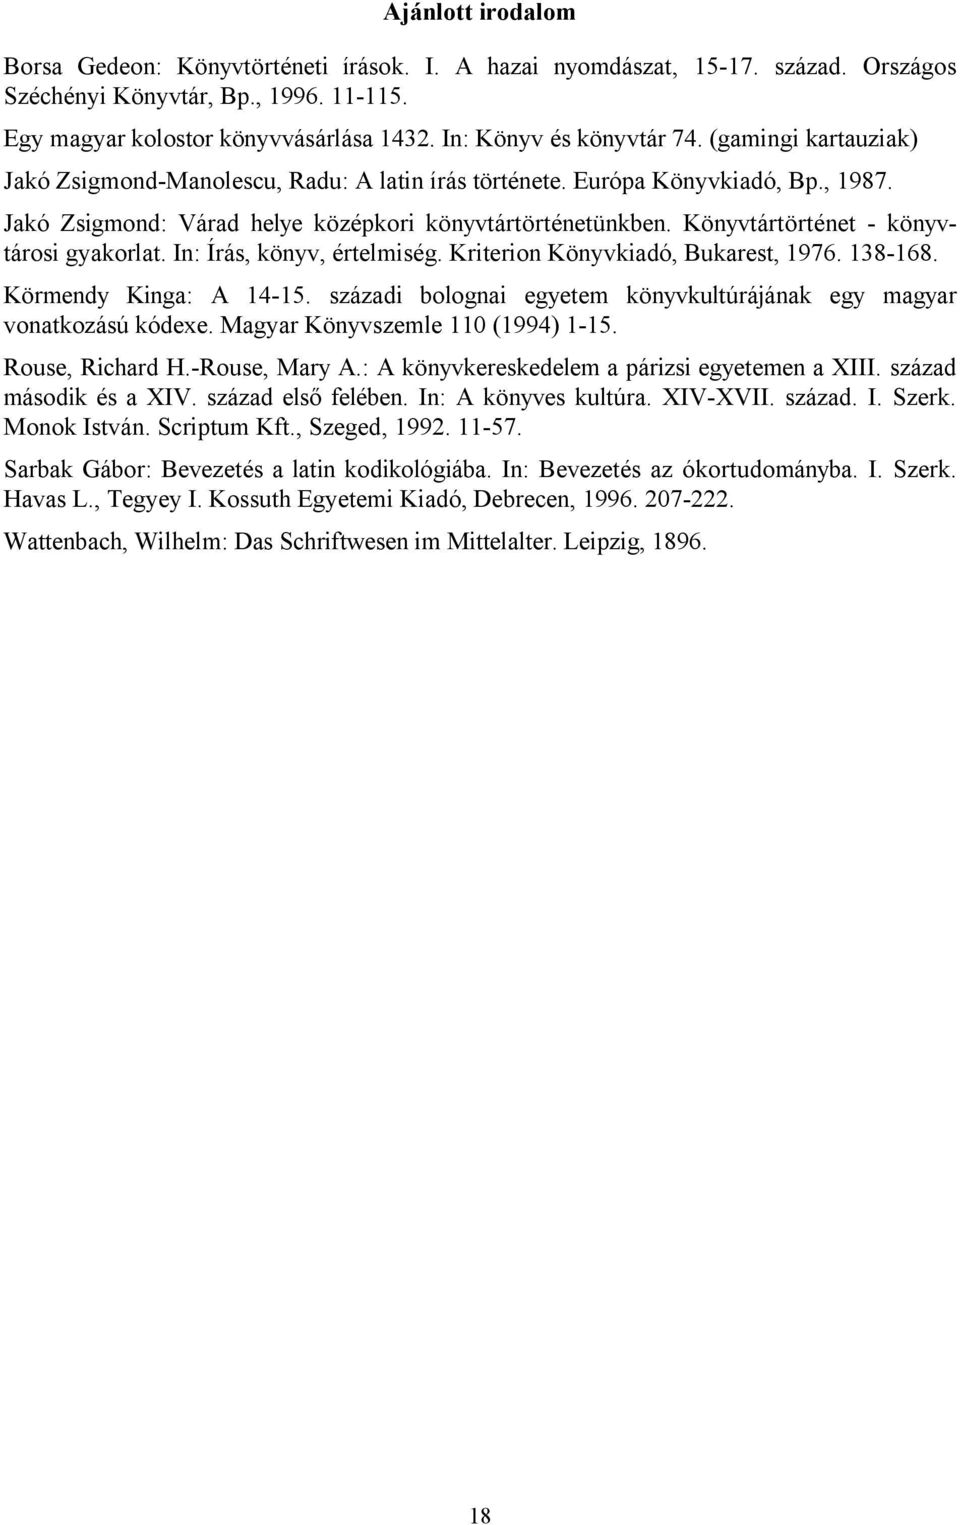 Könyvtártörténet - könyvtárosi gyakorlat. In: Írás, könyv, értelmiség. Kriterion Könyvkiadó, Bukarest, 1976. 138-168. Körmendy Kinga: A 14-15.